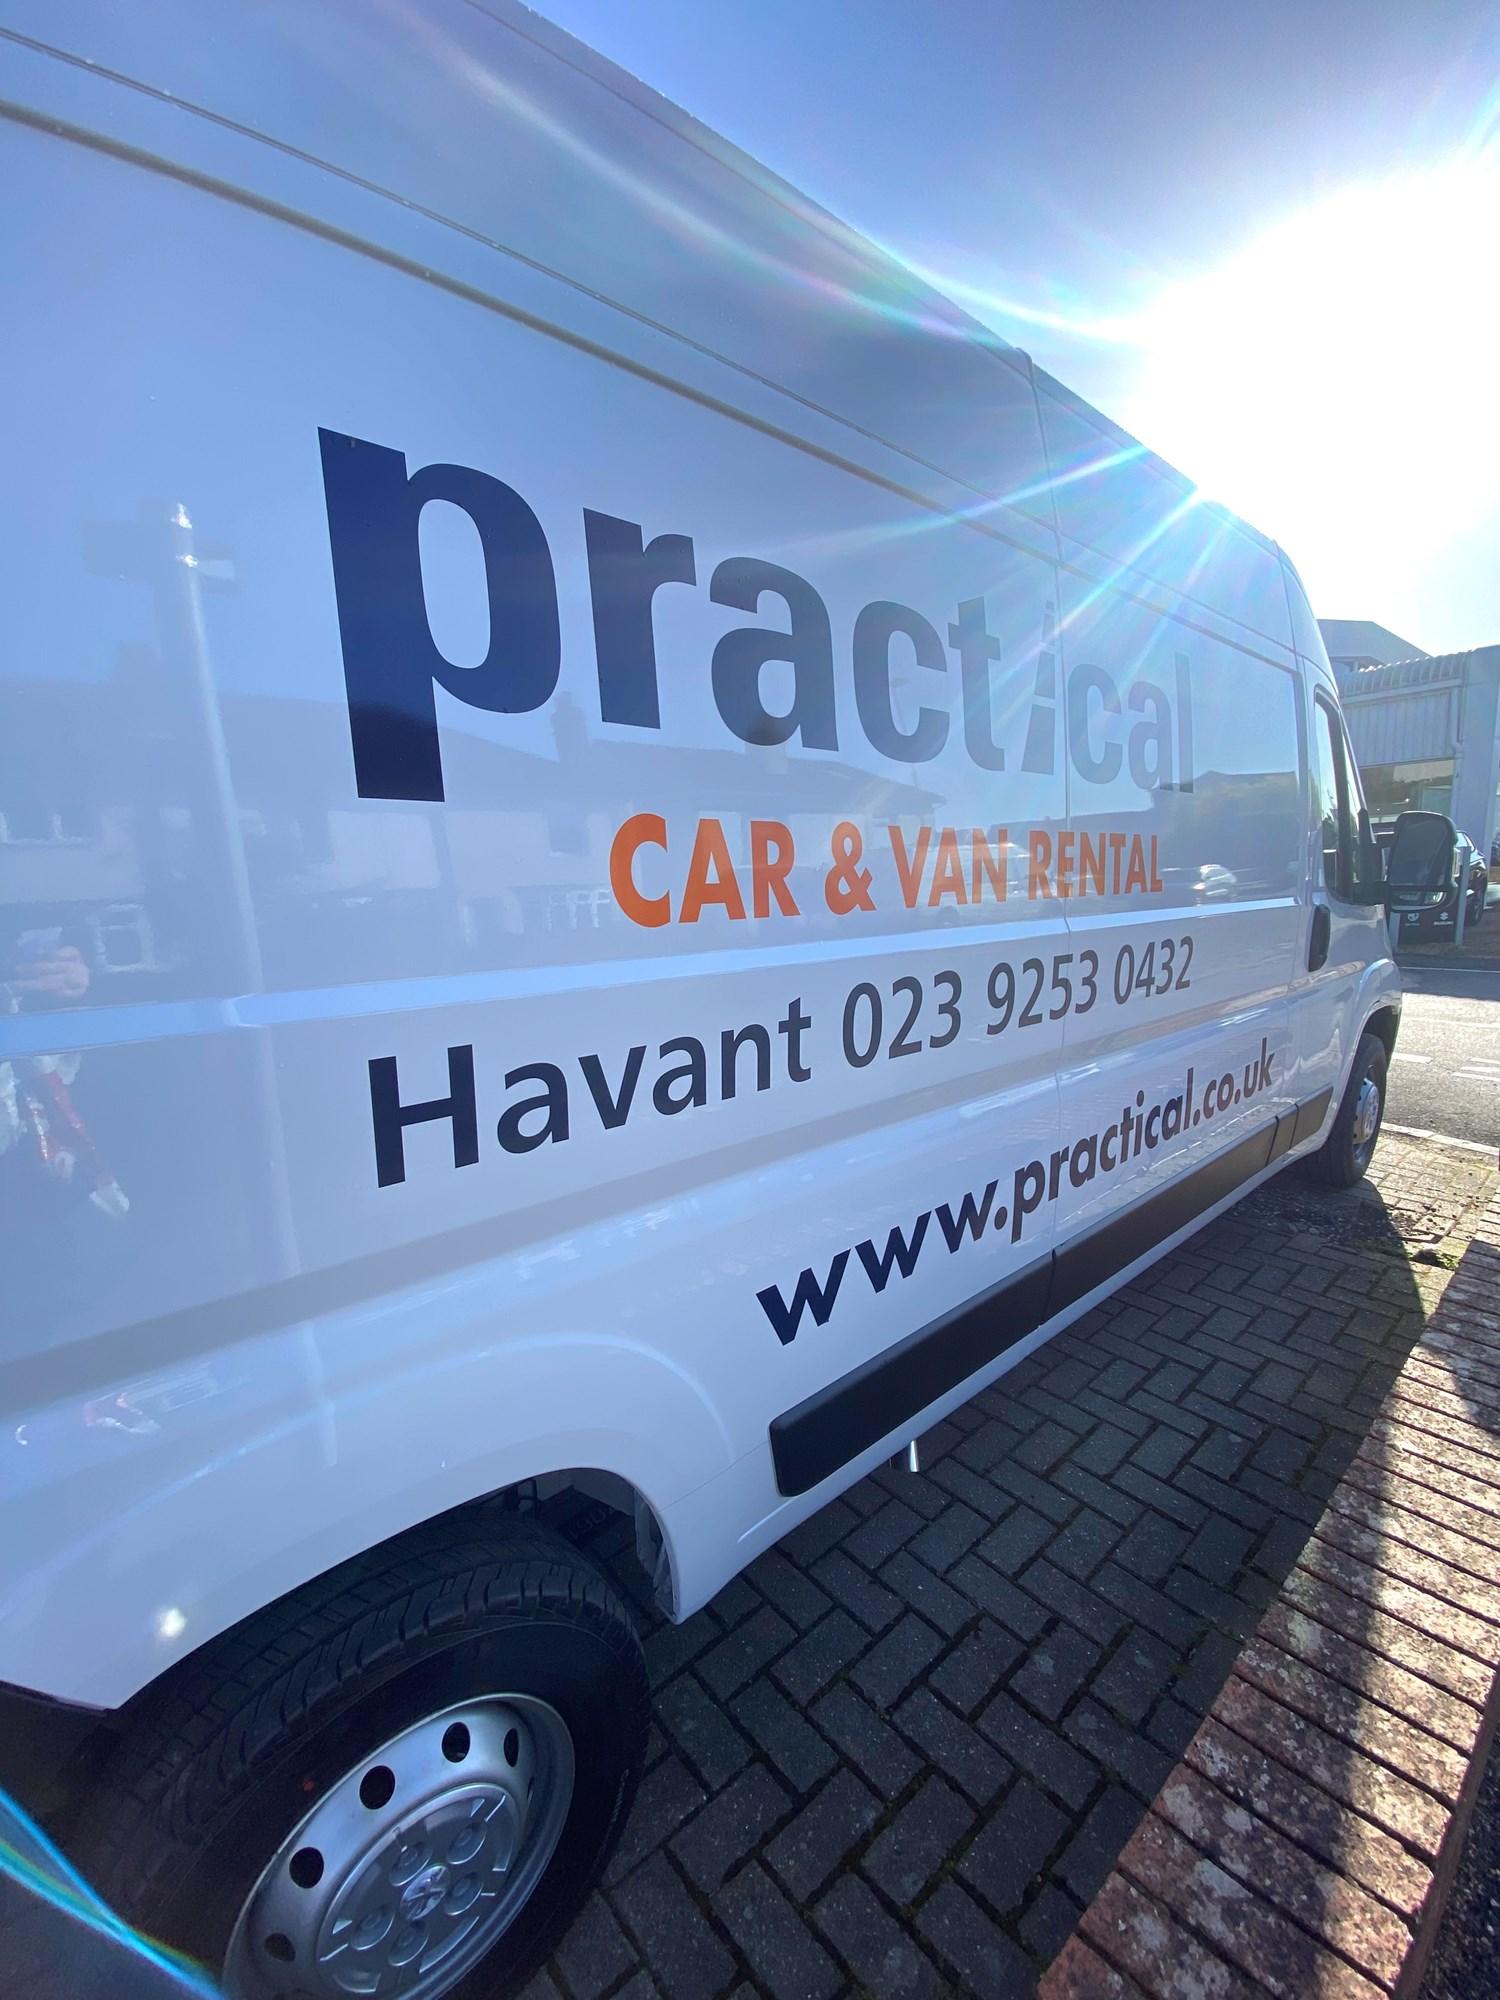 Practical Car and Van Rental Havant 02392530432 signwriting on a white van